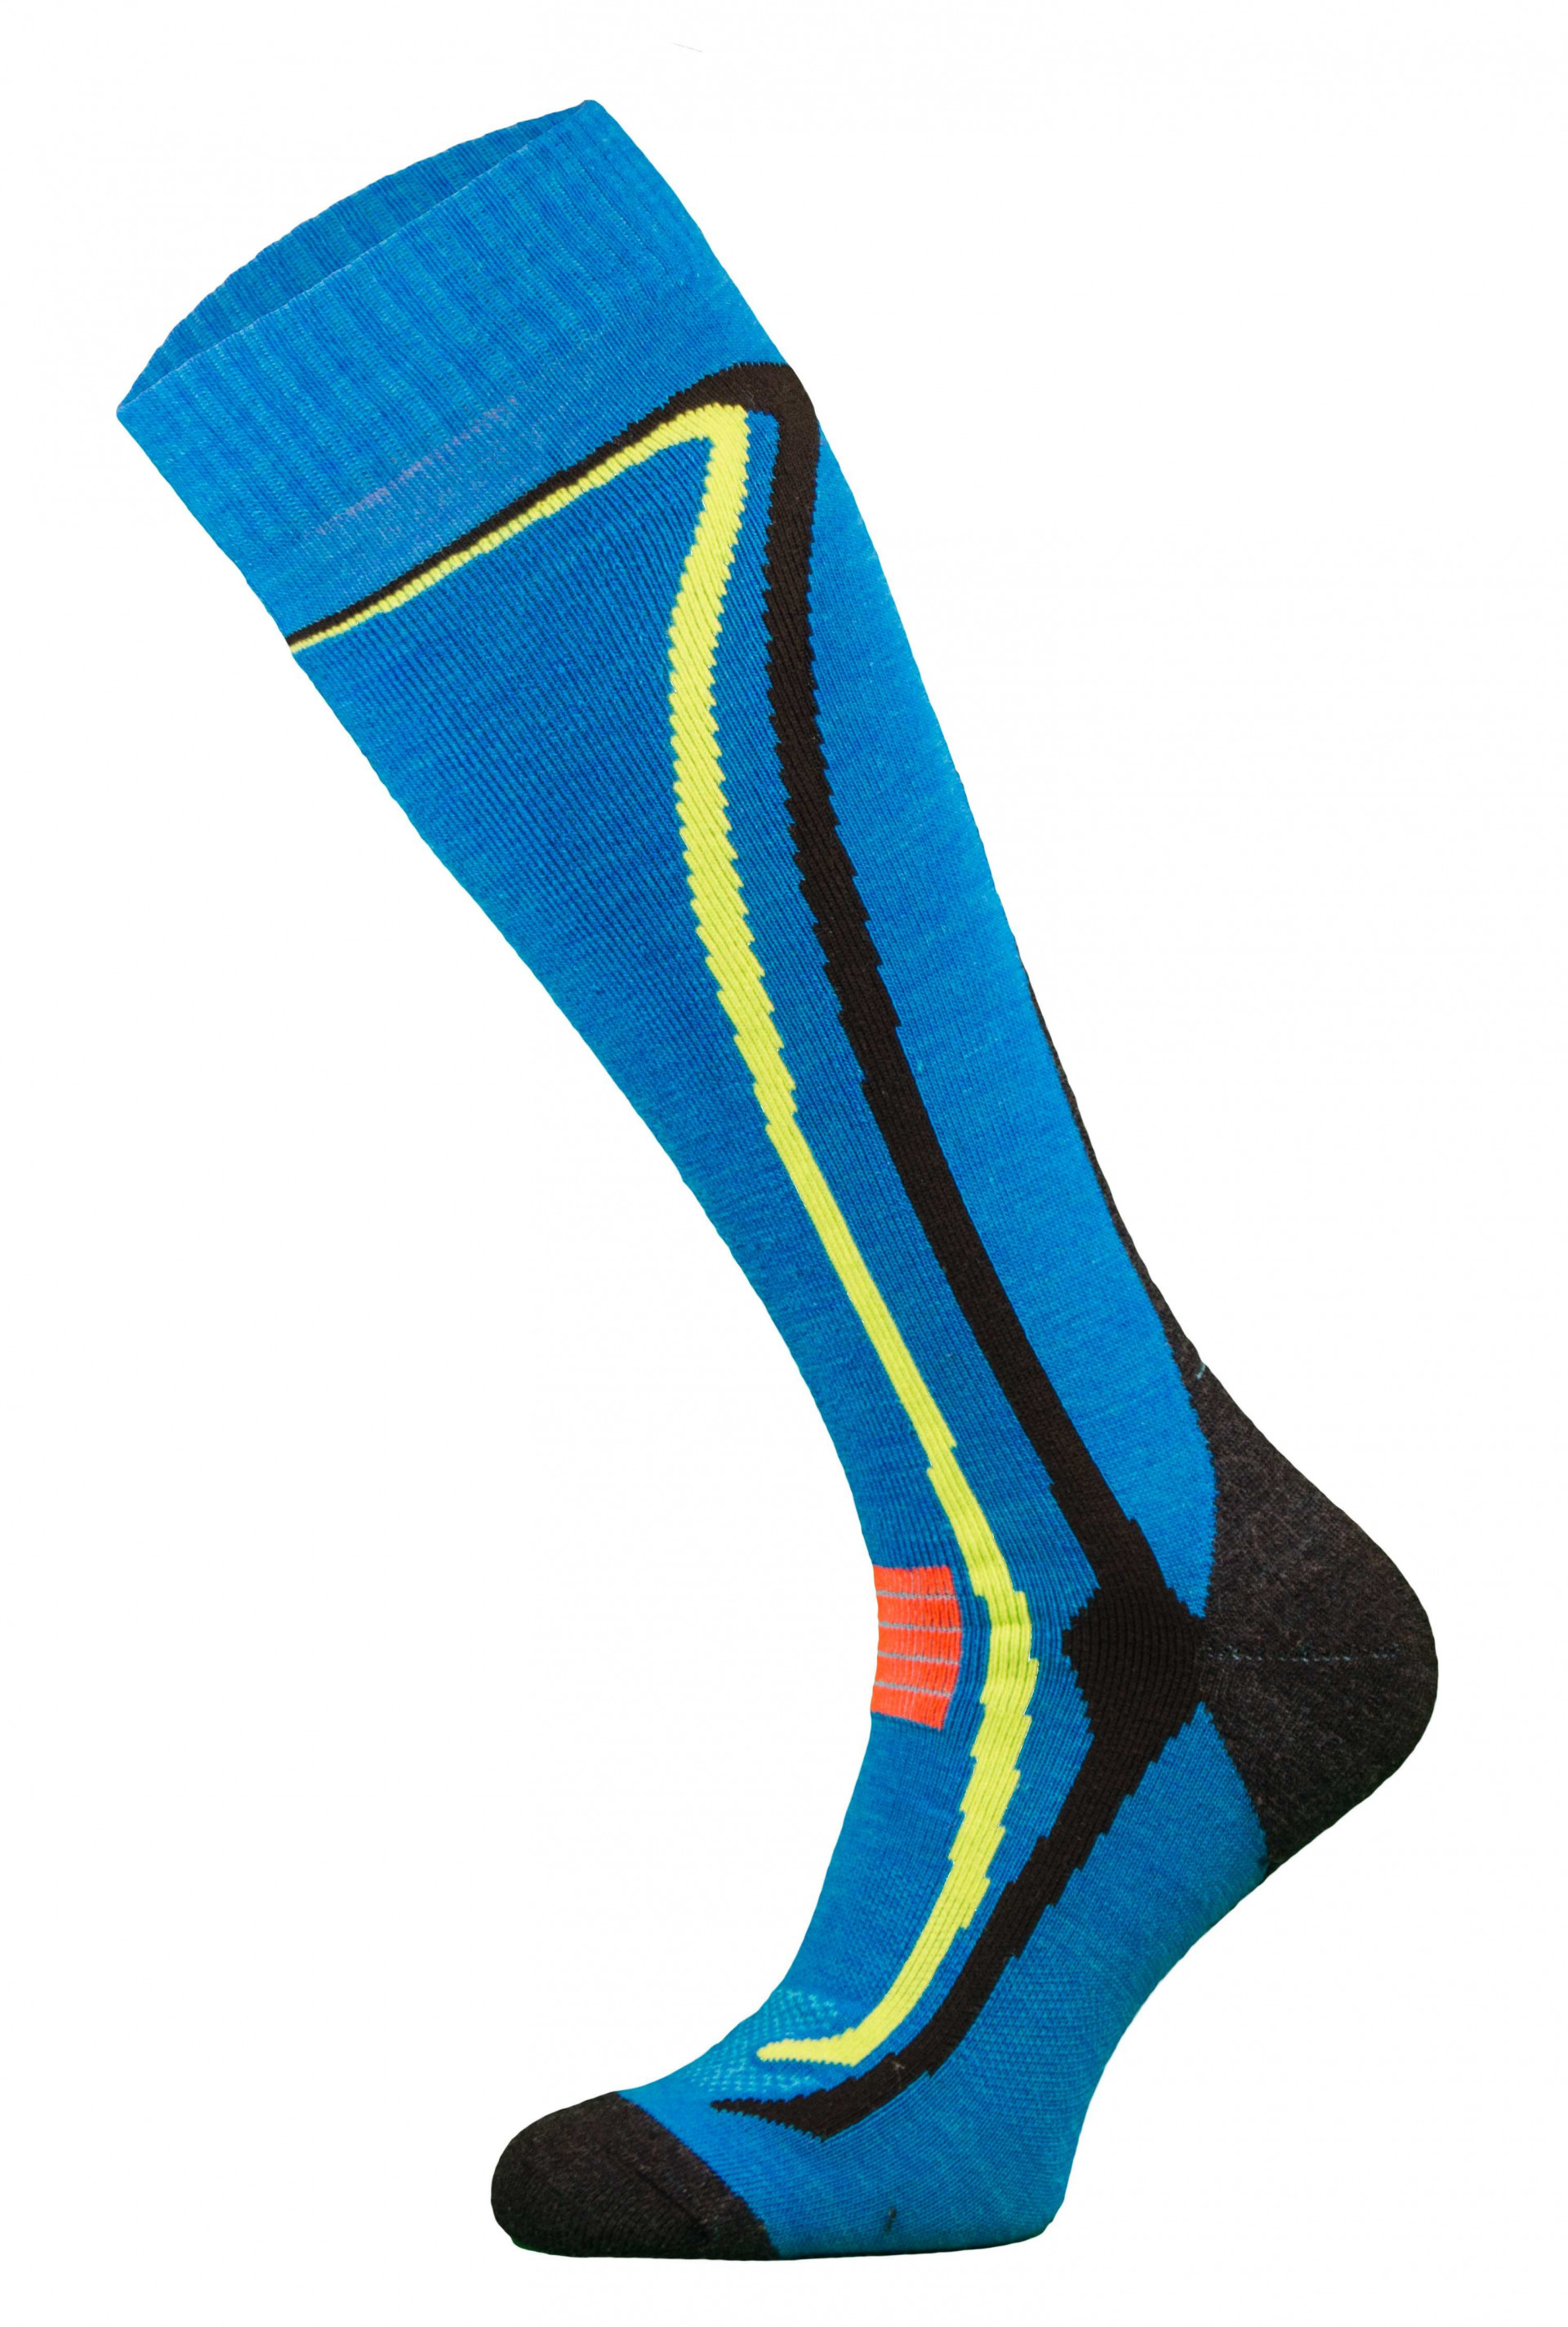 Chaussettes pour le ski et les sports d'hiver avec laine de Mérinos par Comodo Sock (Plusieurs coloris)